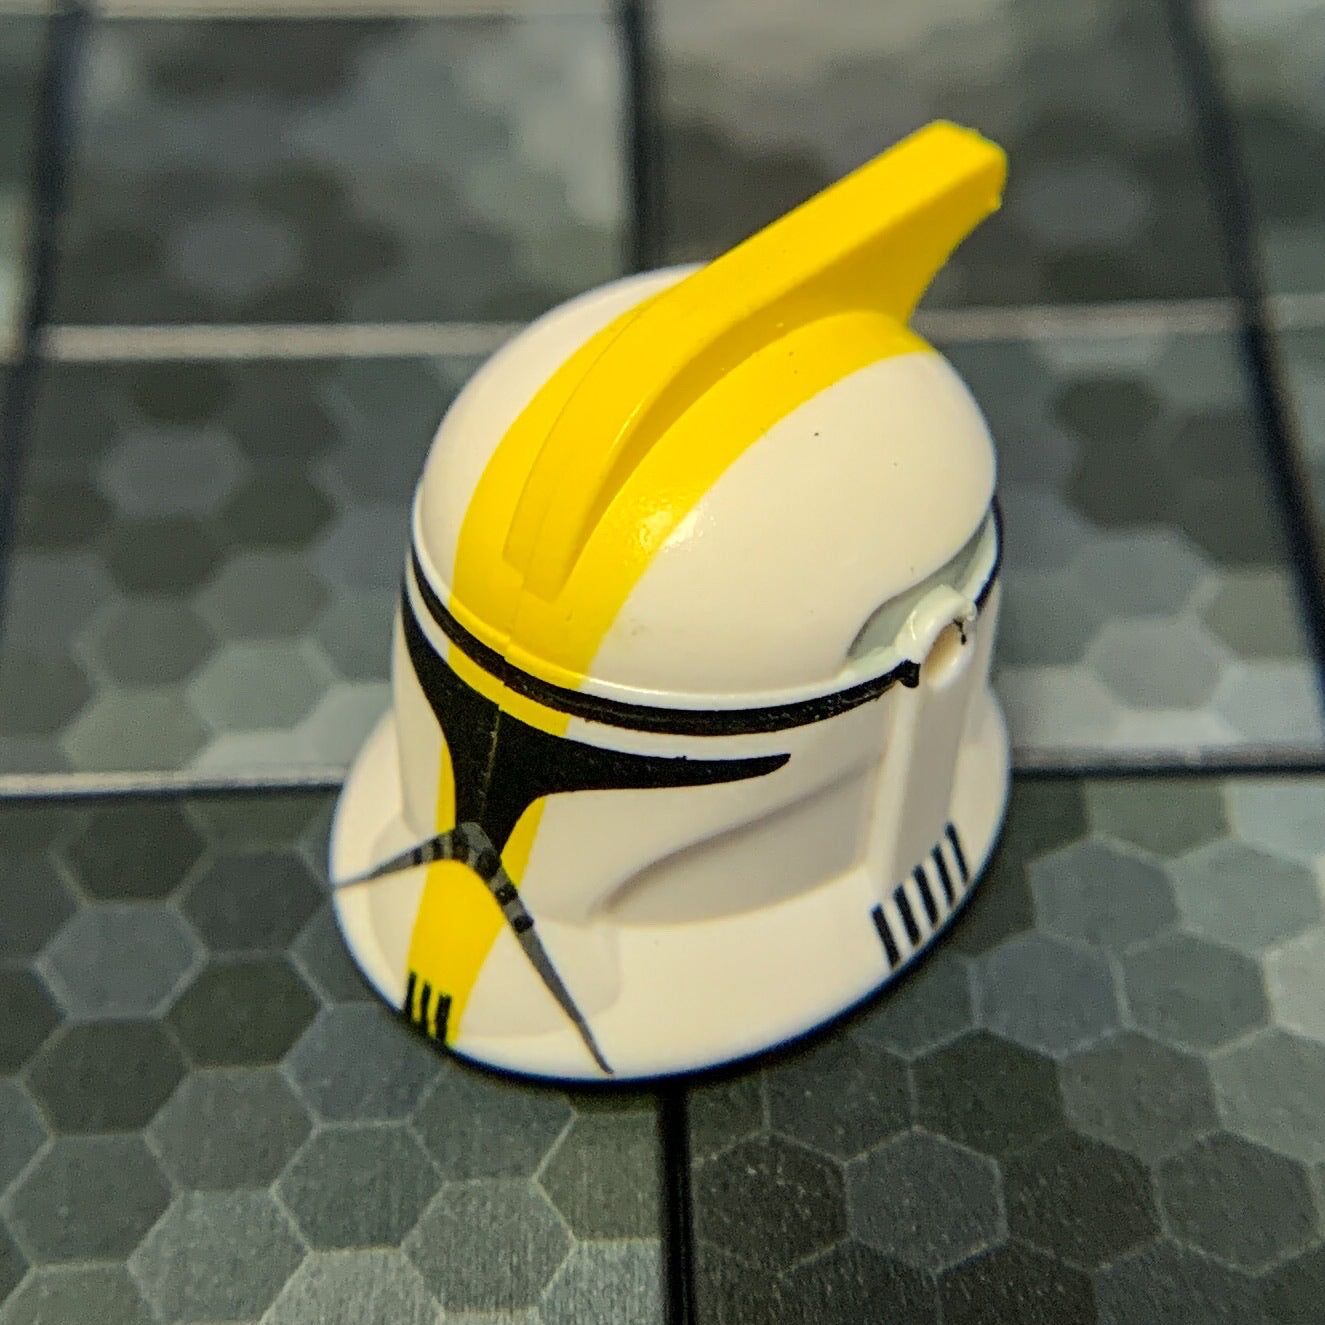 lego clone trooper phase 1